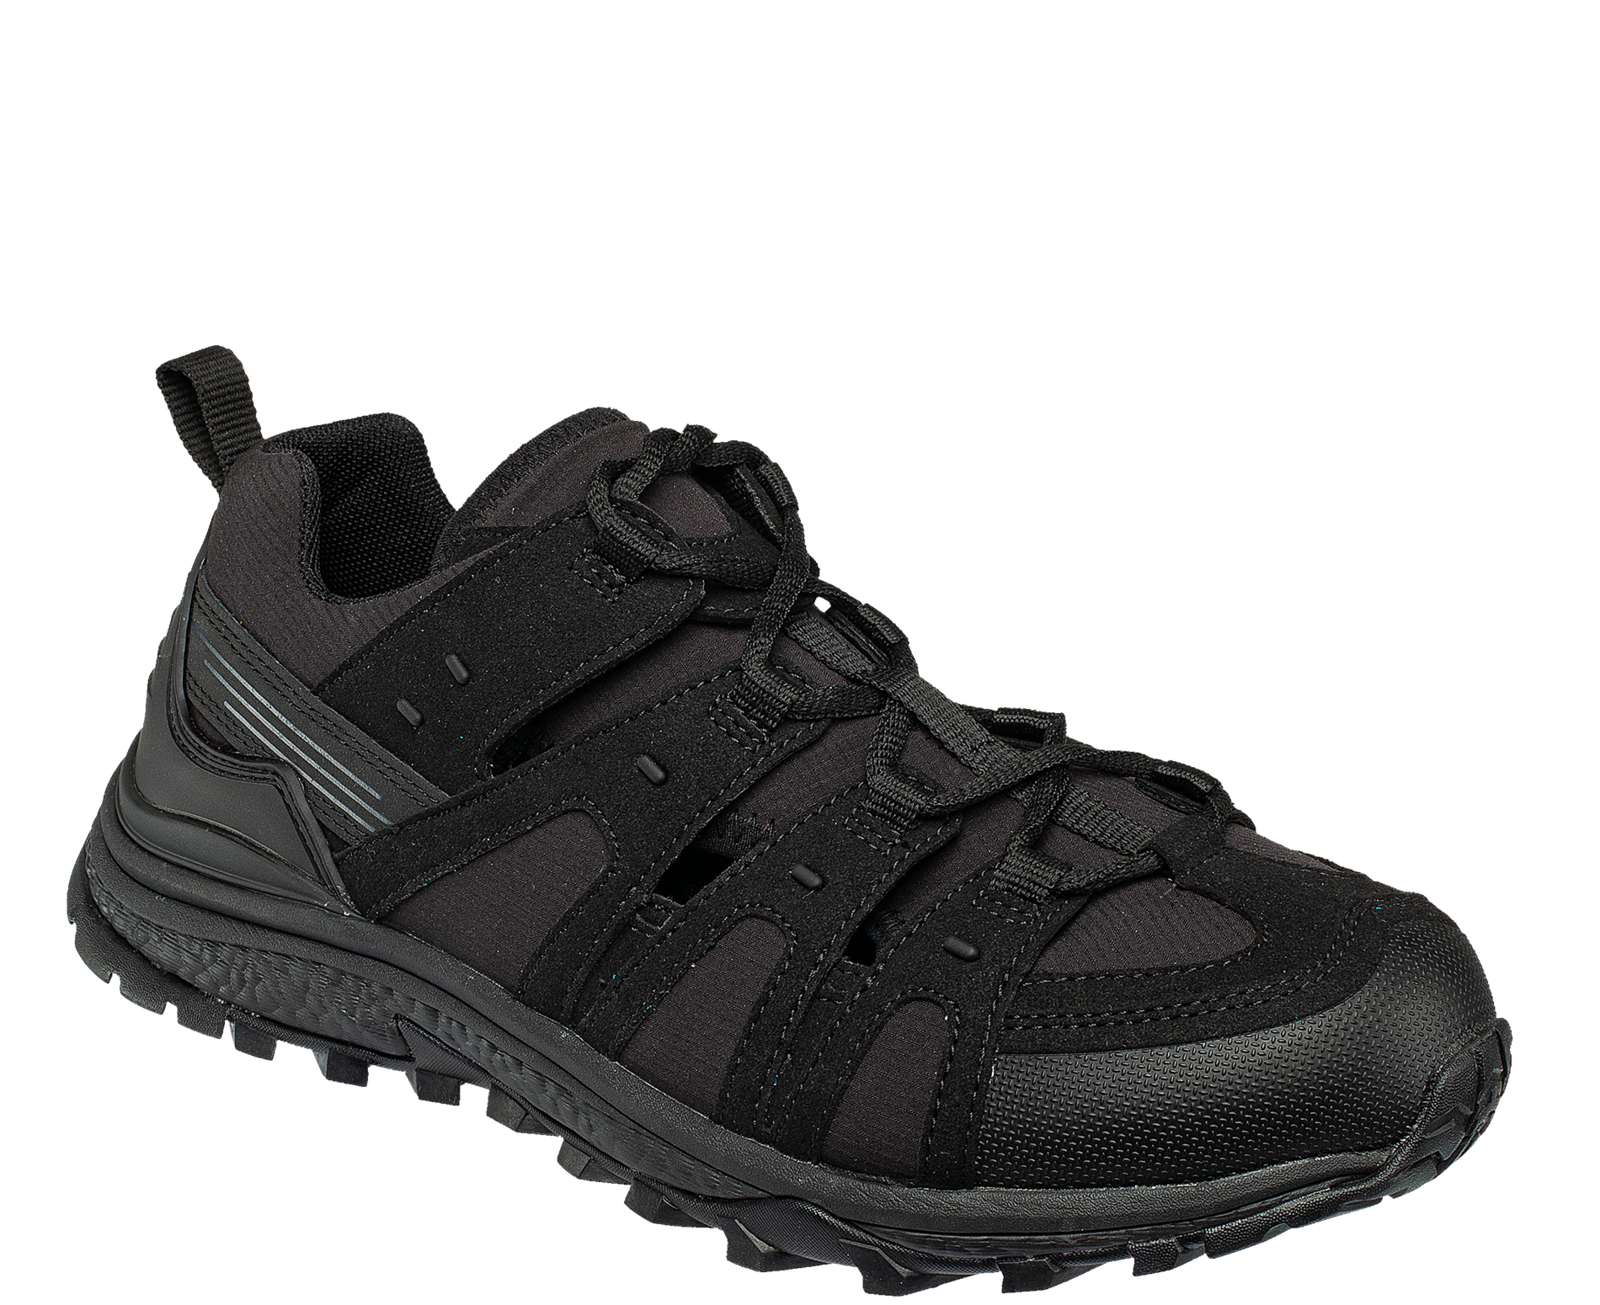 Pracovné sandále Bennon Amigo O1 čierne - veľkosť: 45, farba: čierna